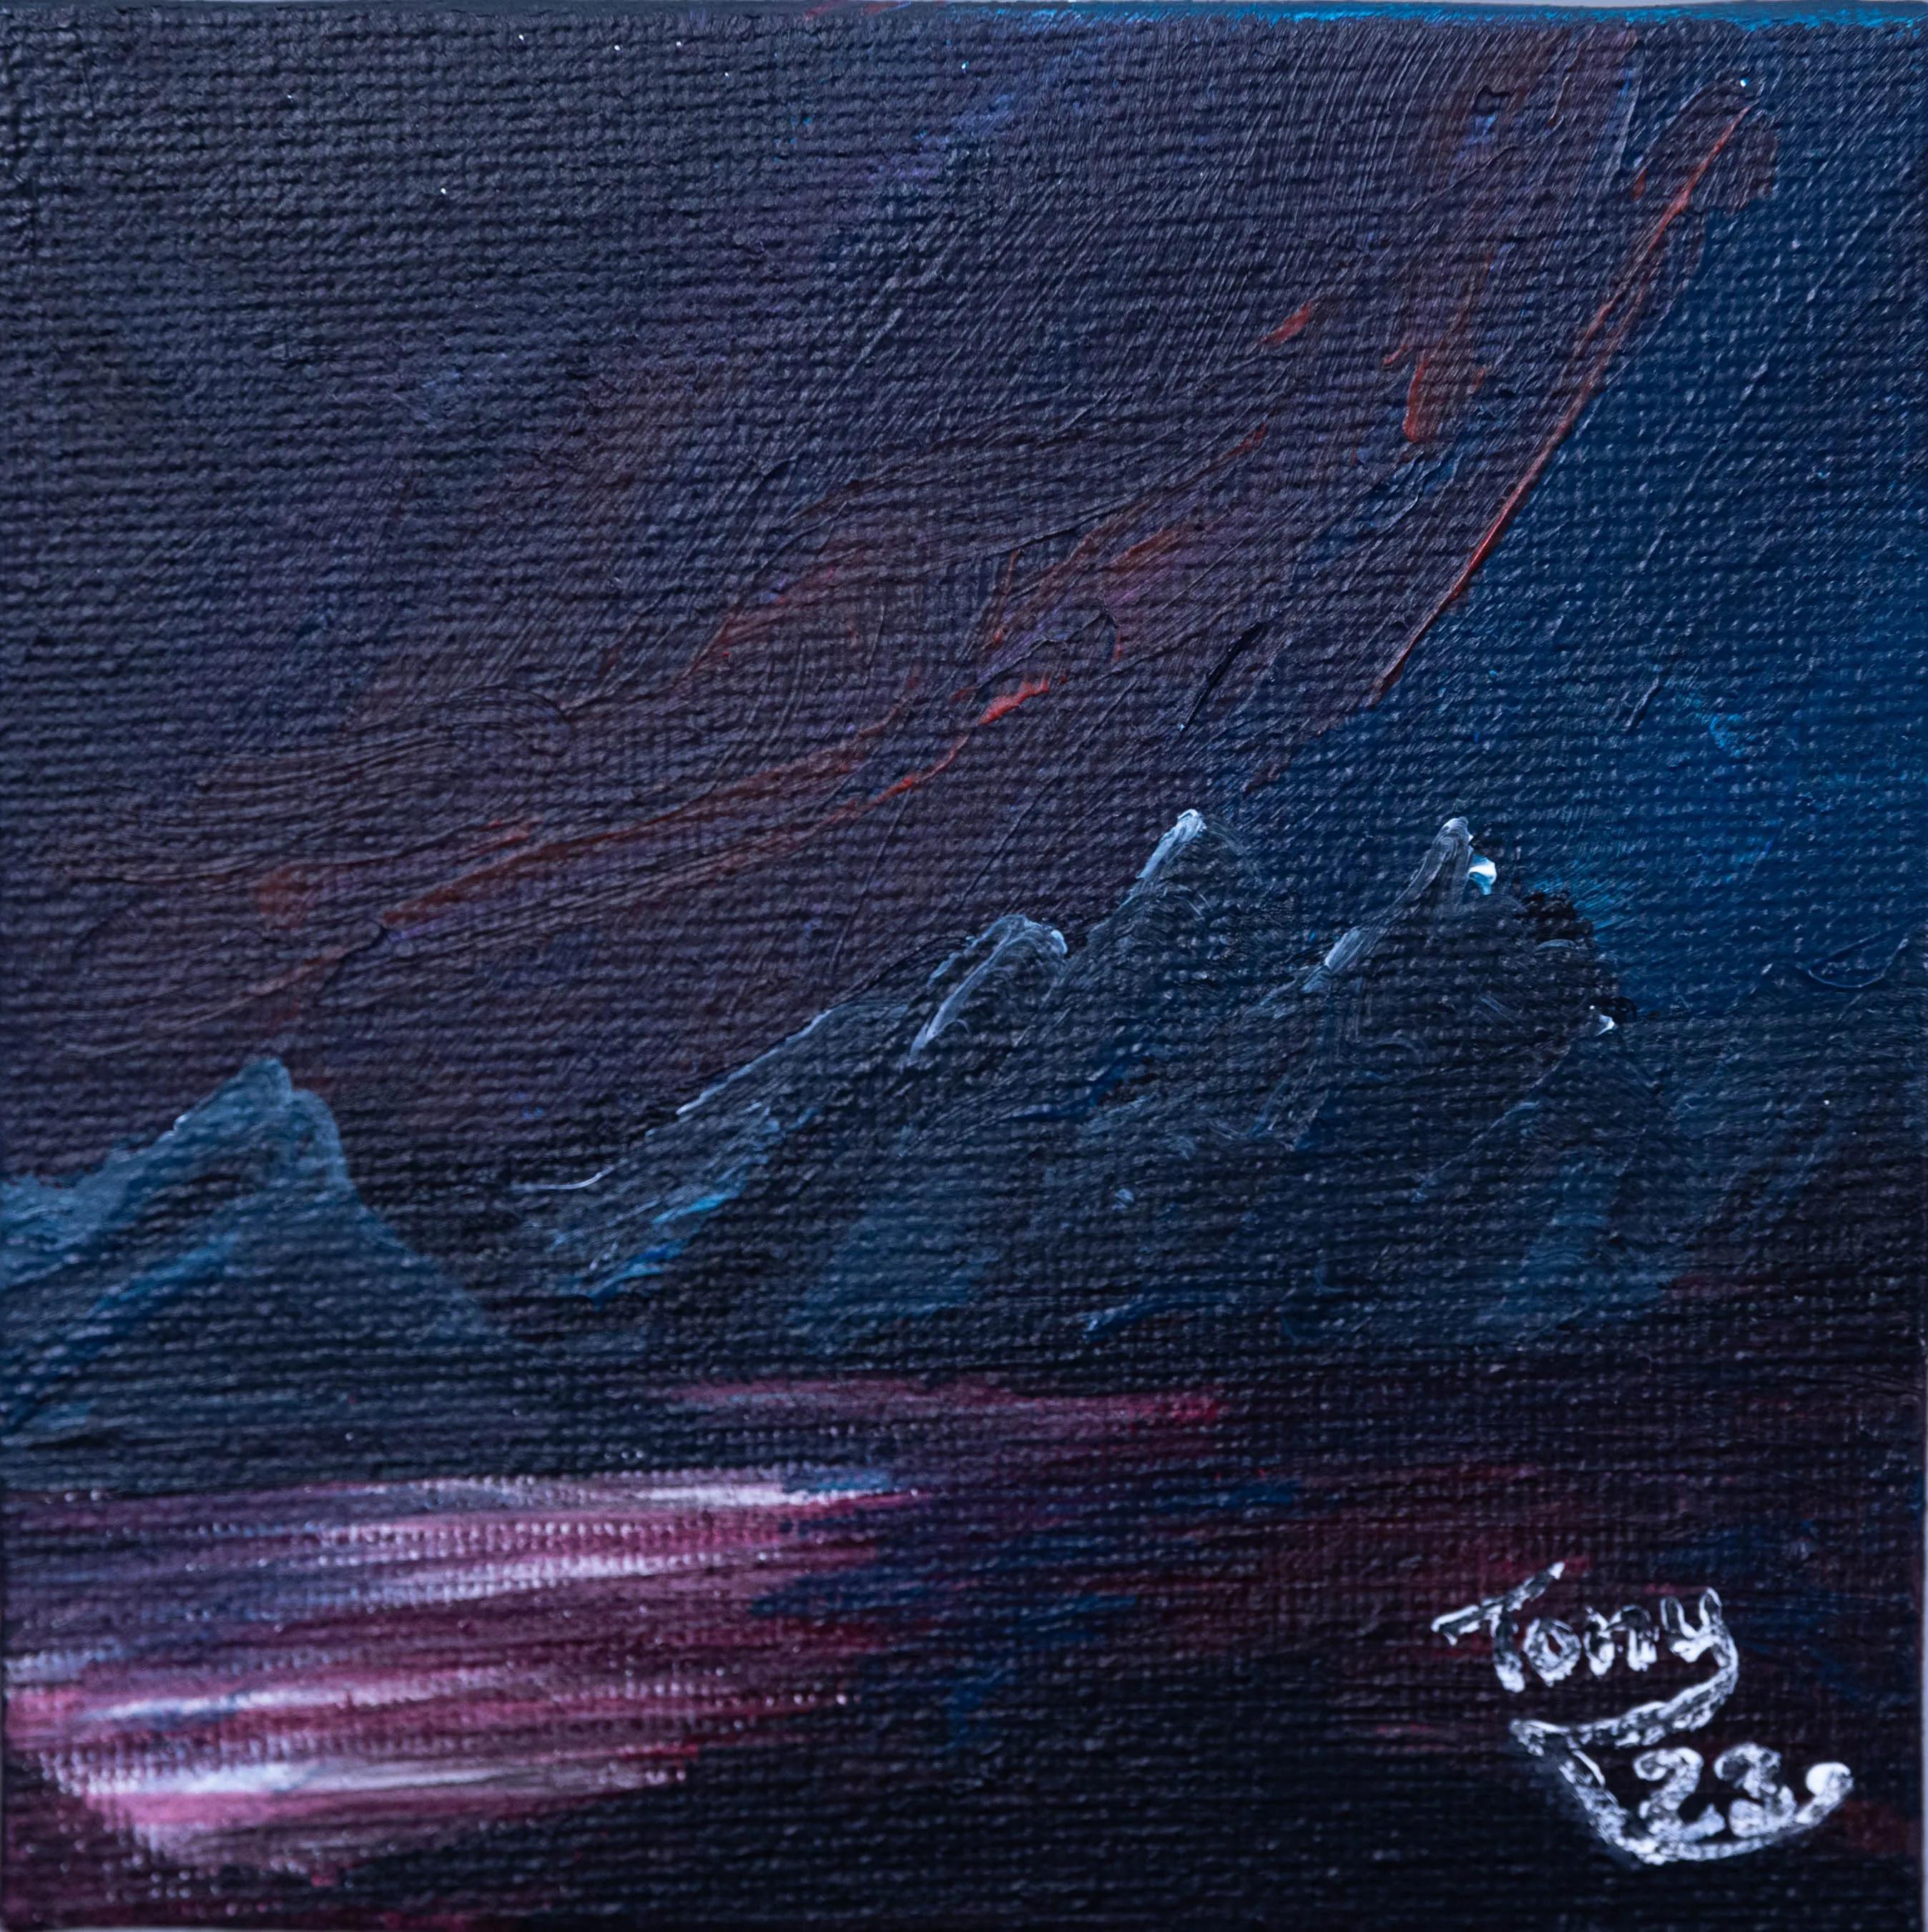 Noche en Júpiter - Crazy Art - Cuadro en miniatura para regalo (1)-2.jpg